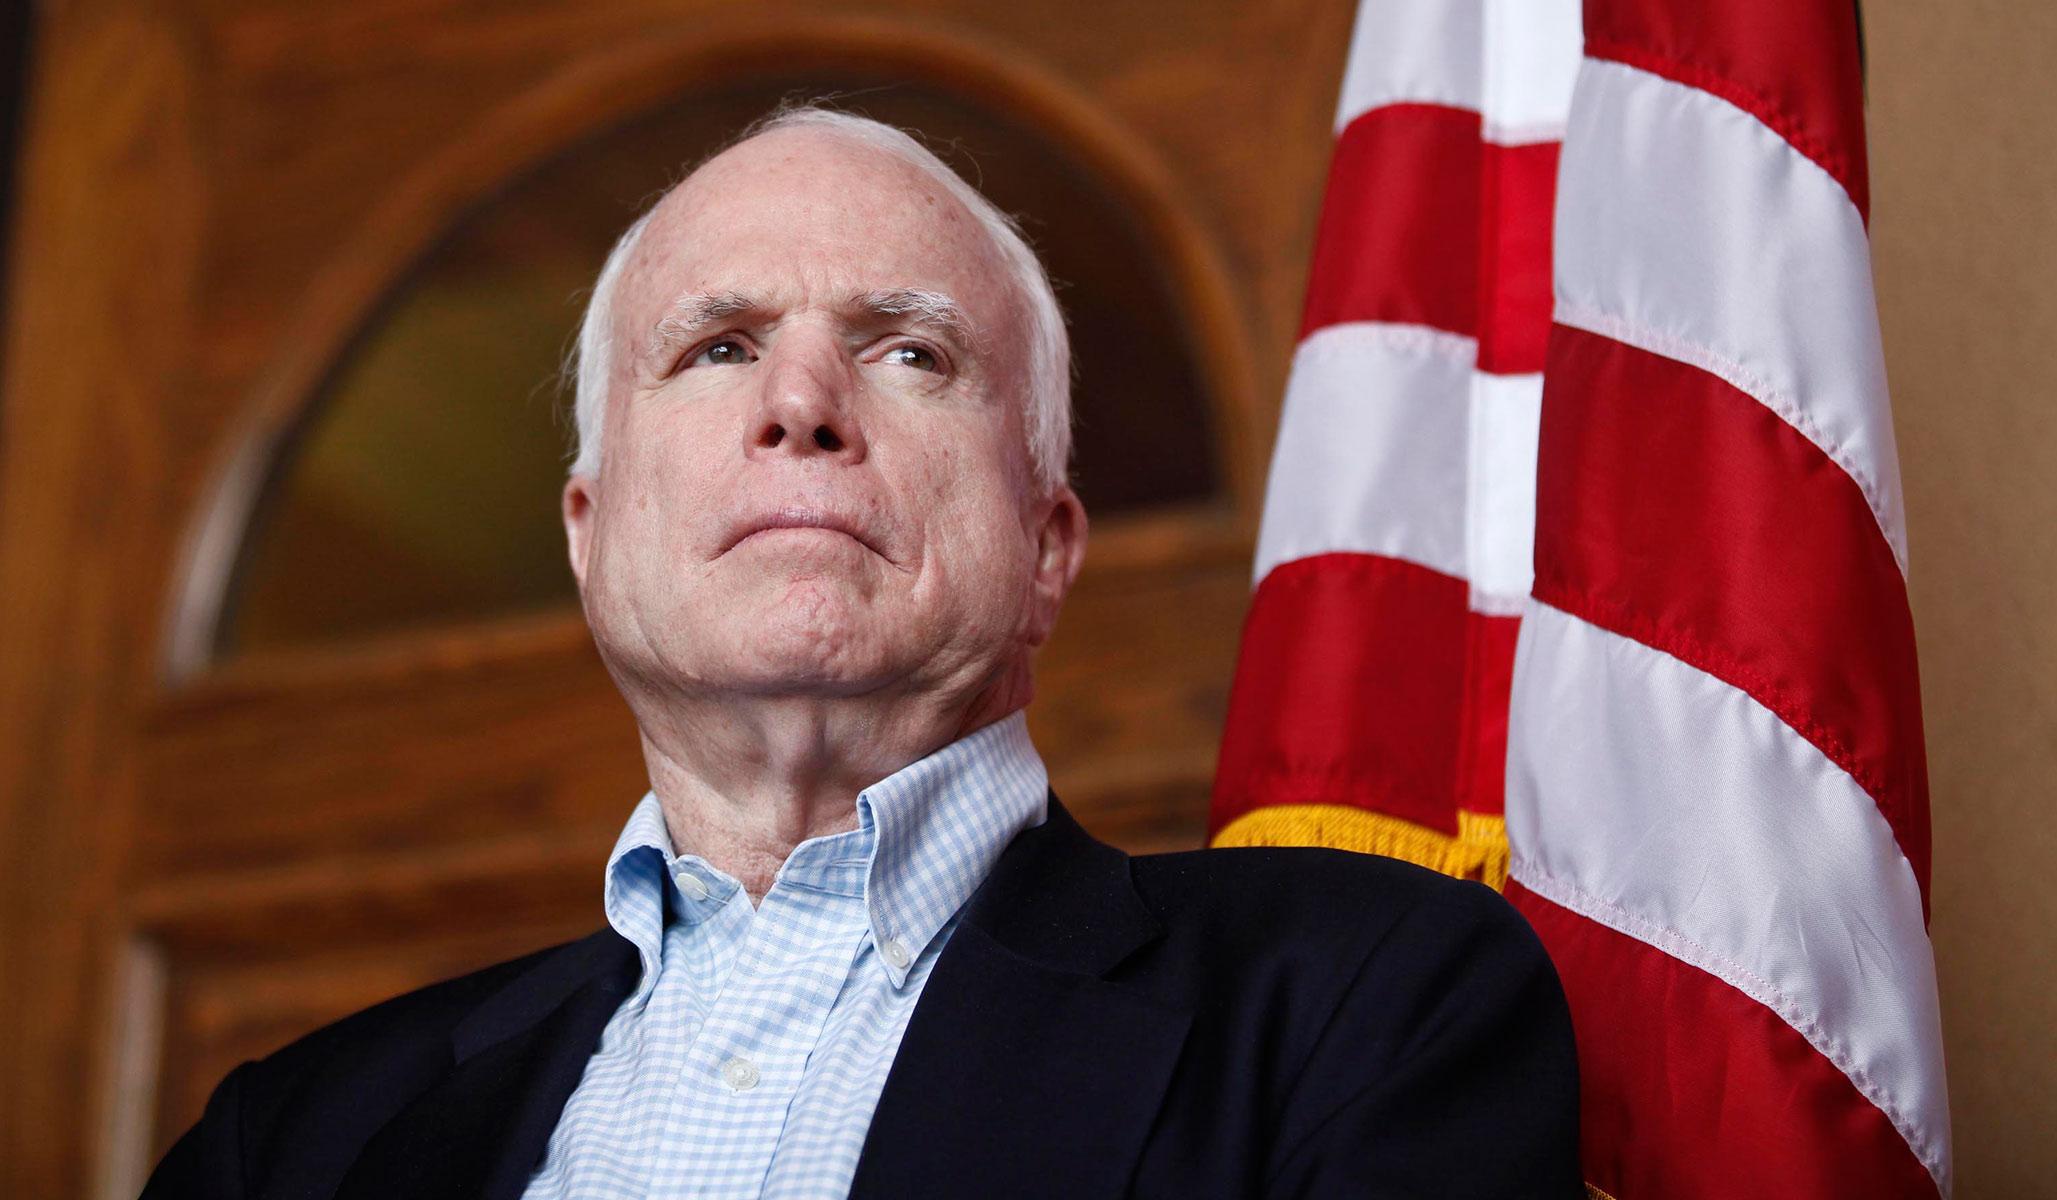 ABD'li senatör John McCain'den ilginç Kerkük çıkışı: Silahlarımız kullanılamaz